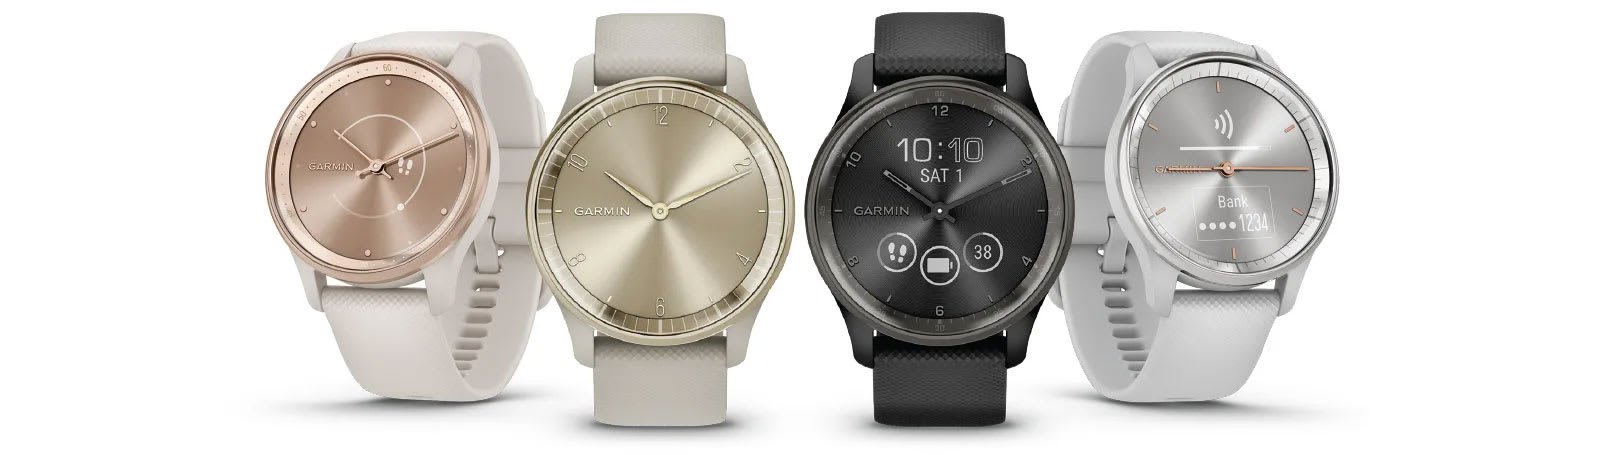 biały / jasnokremowy zegarek Garmin Vivomove Trend oraz 3 inne zegarki Garmin